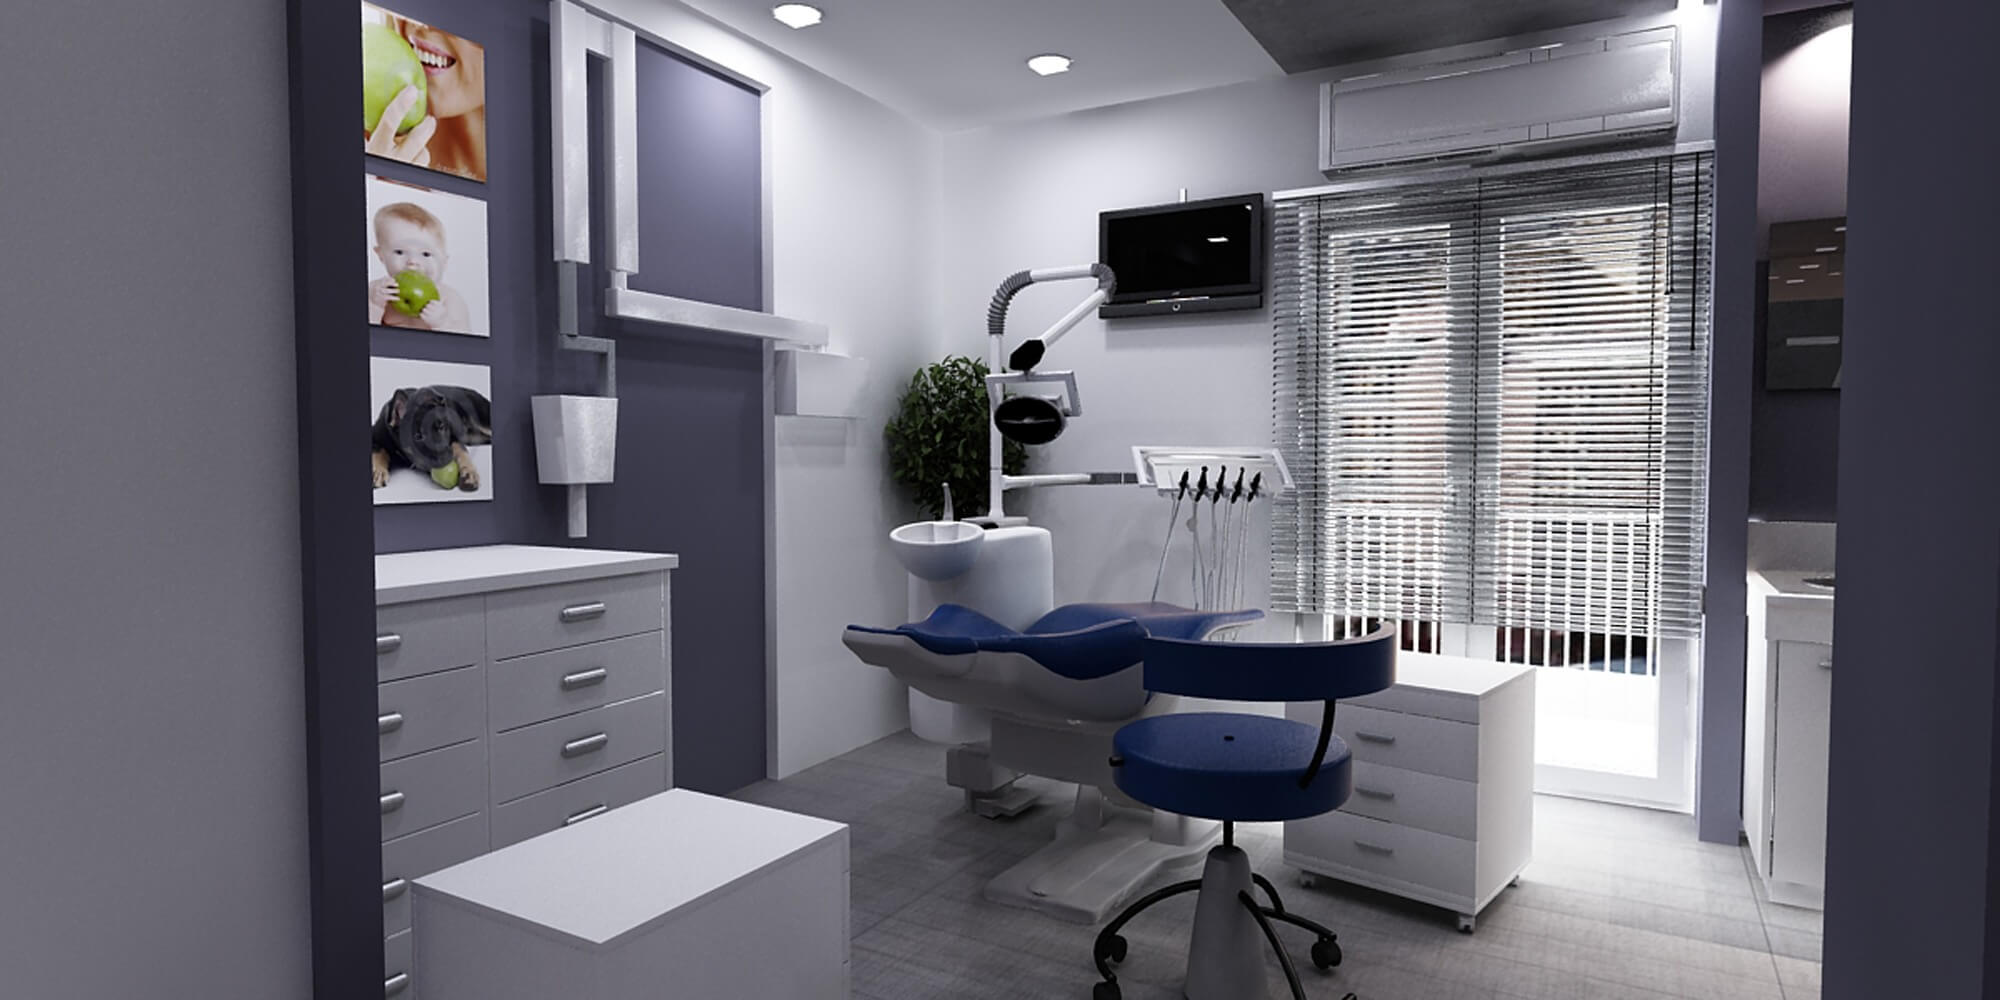 dental clinic interior 